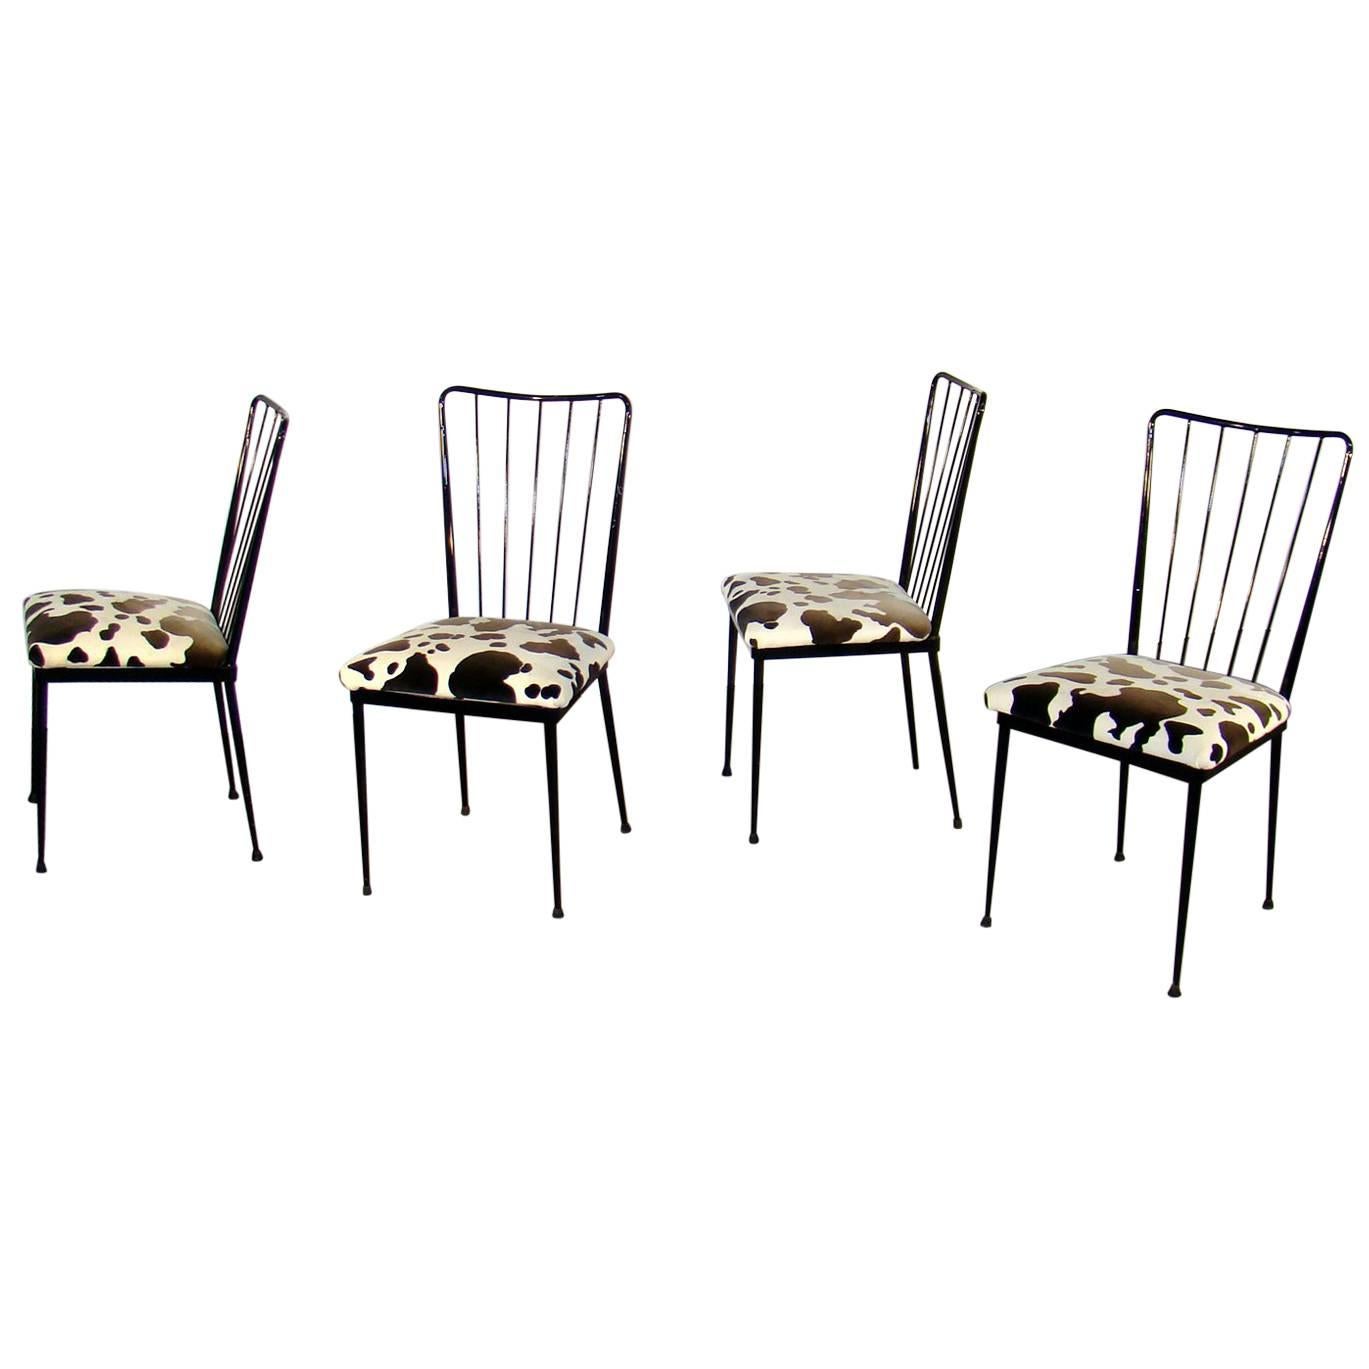 Quatre chaises en métal laqué dans le style de Colette Gueden, vers 1960